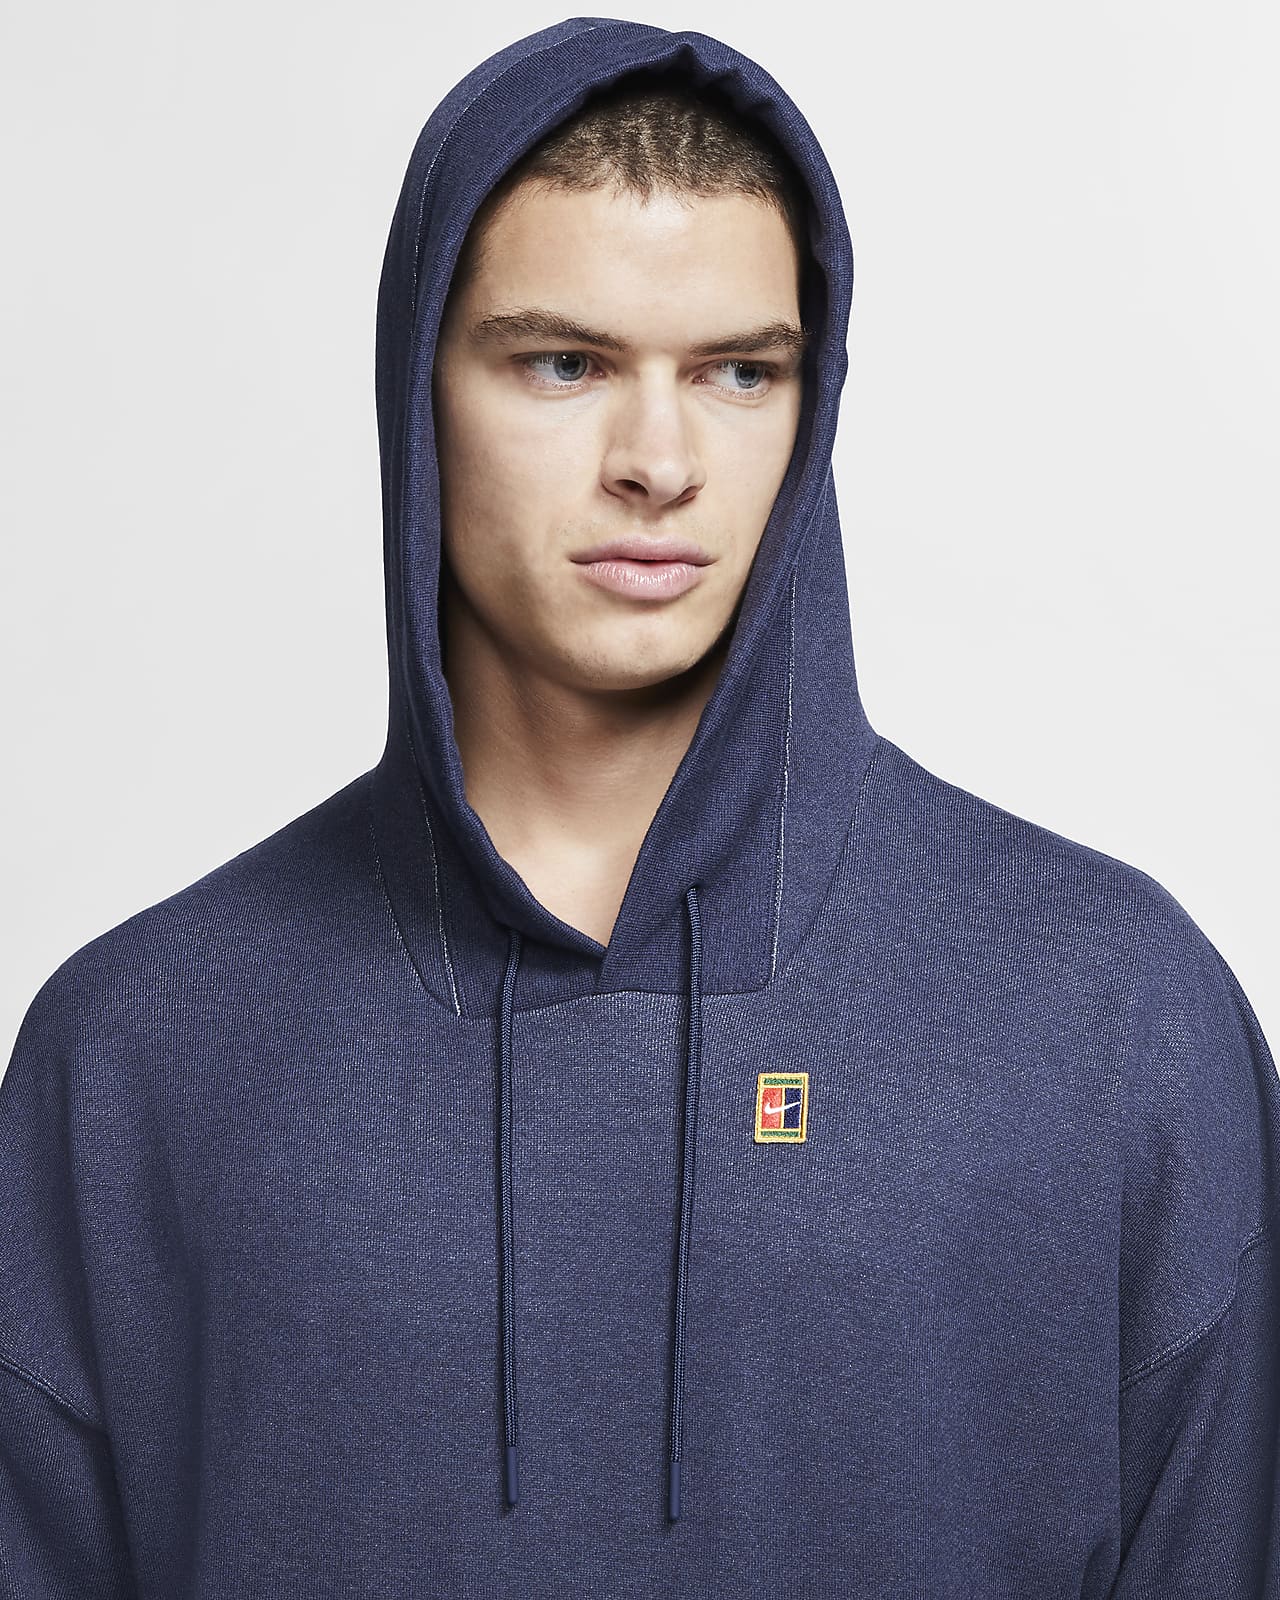 men's fleece tennis hoodie nikecourt